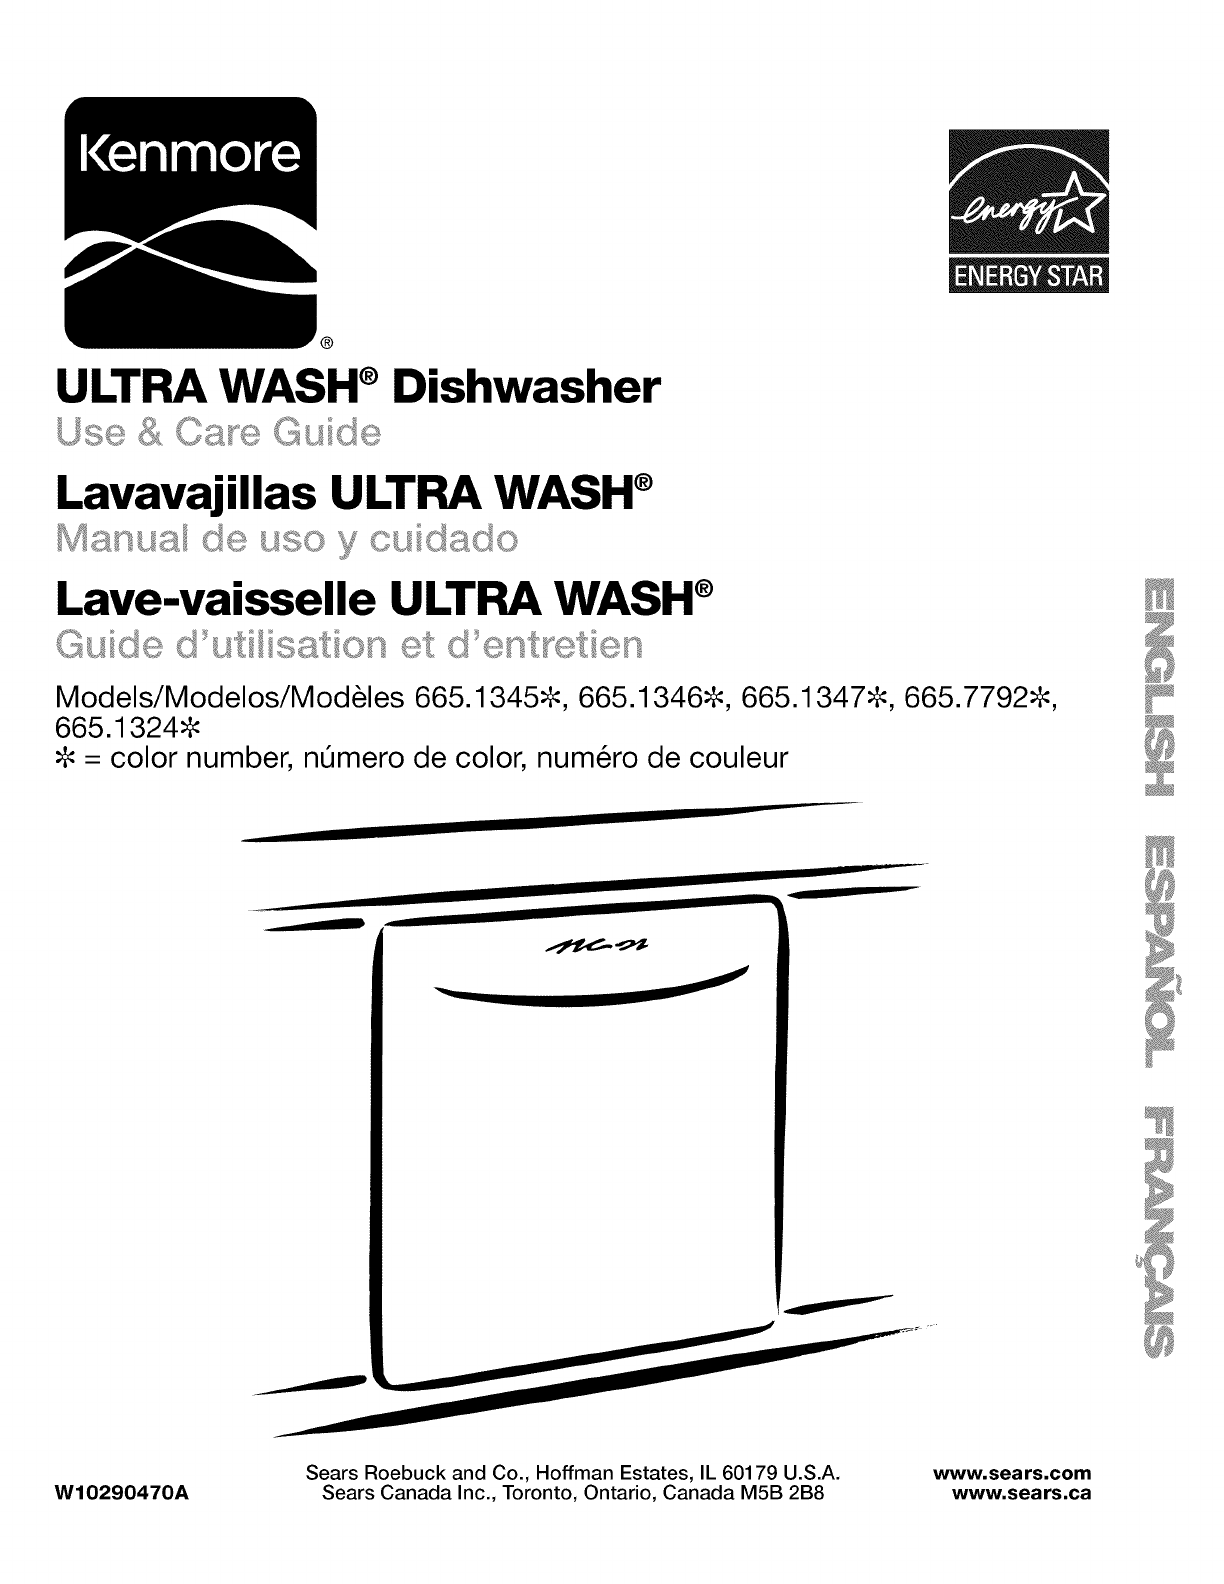 Kenmore ultra wash model 665 parts manual